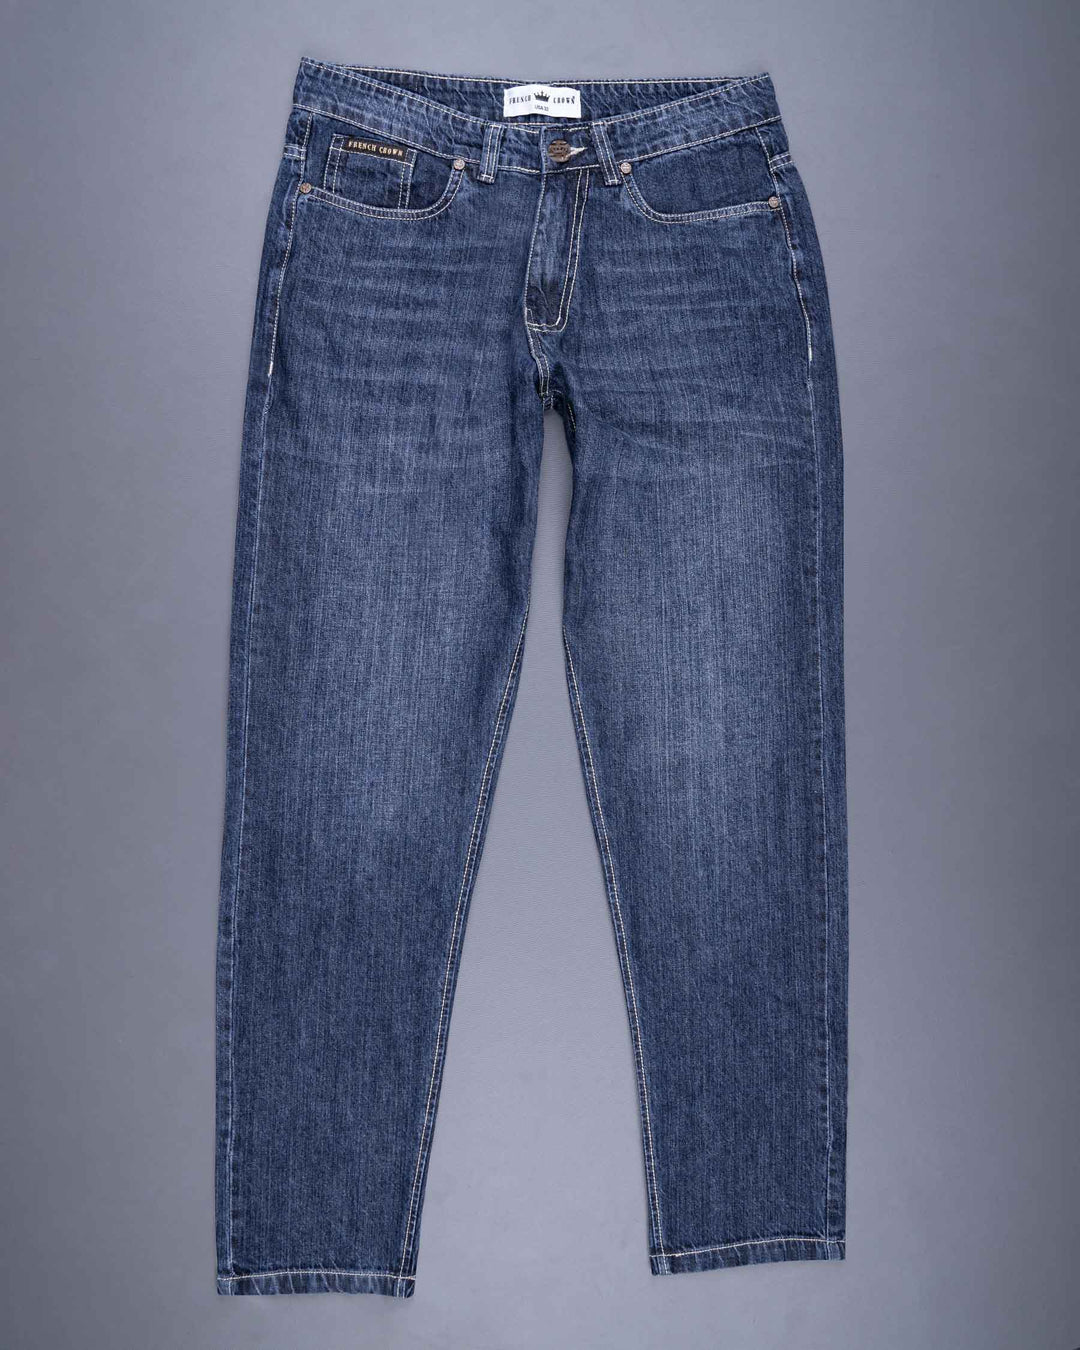 Blue comfort fit denim jeans